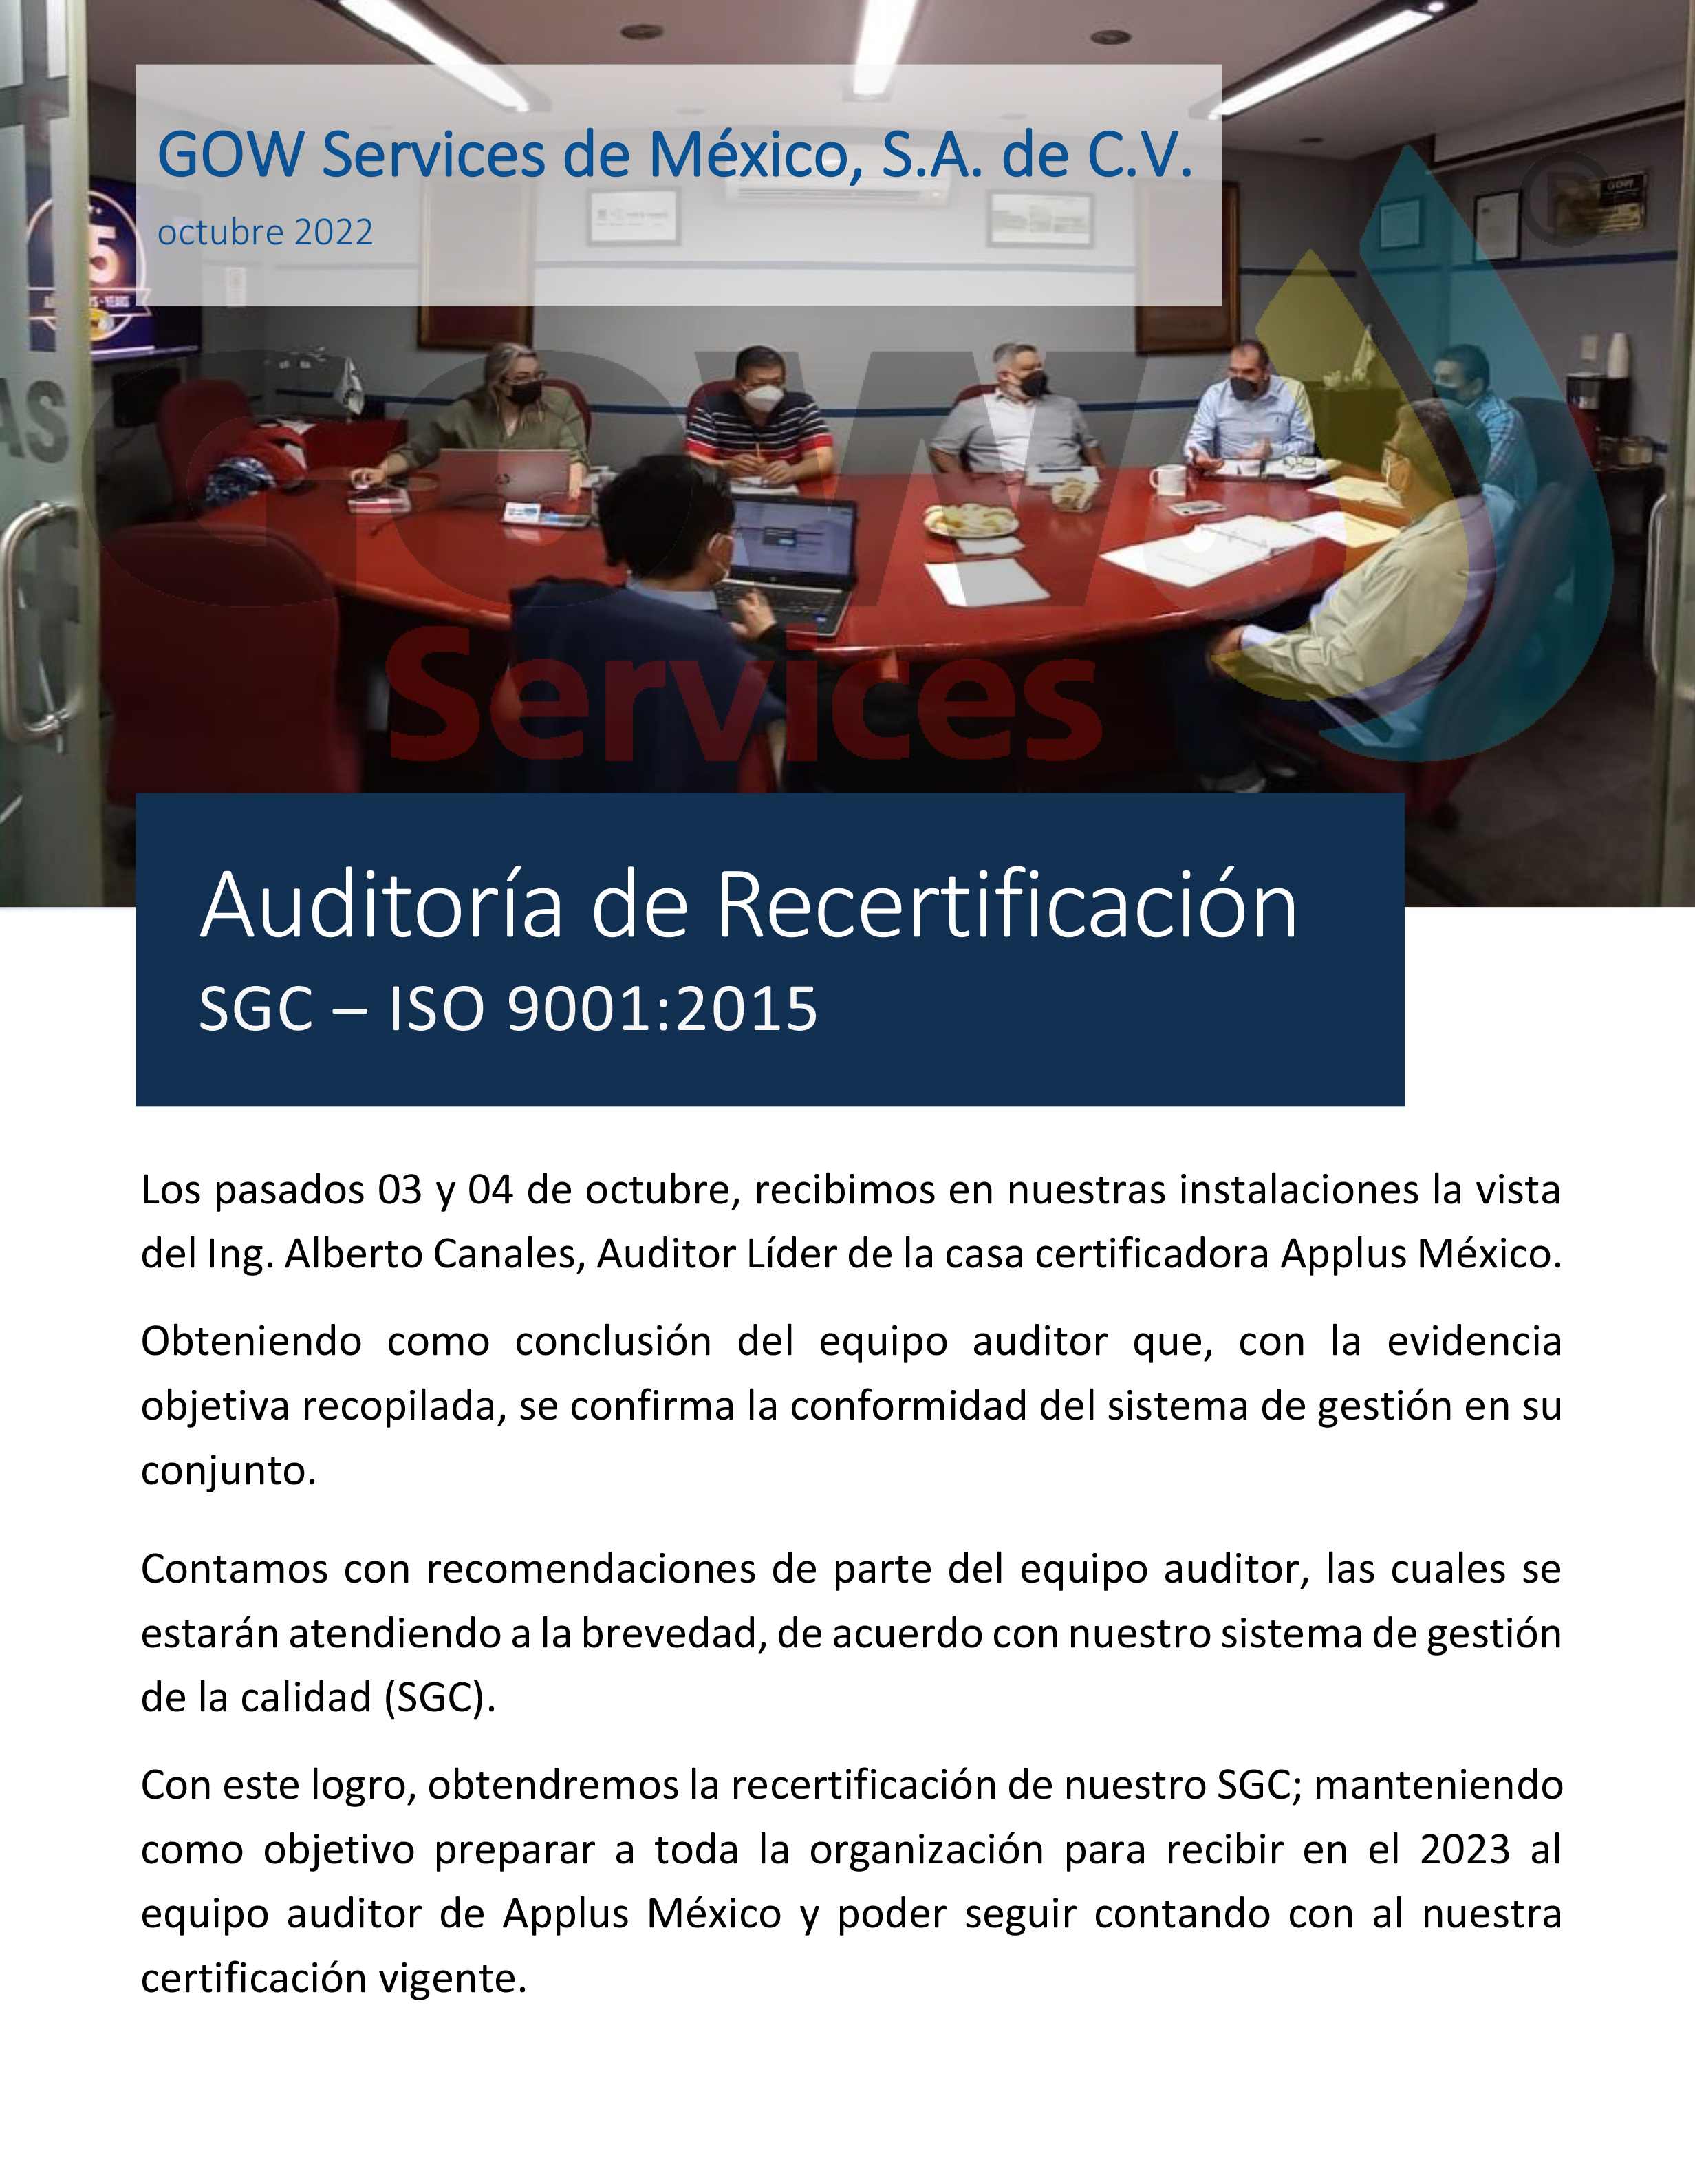 Noticia Auditoría de Recertificación oct. 2022